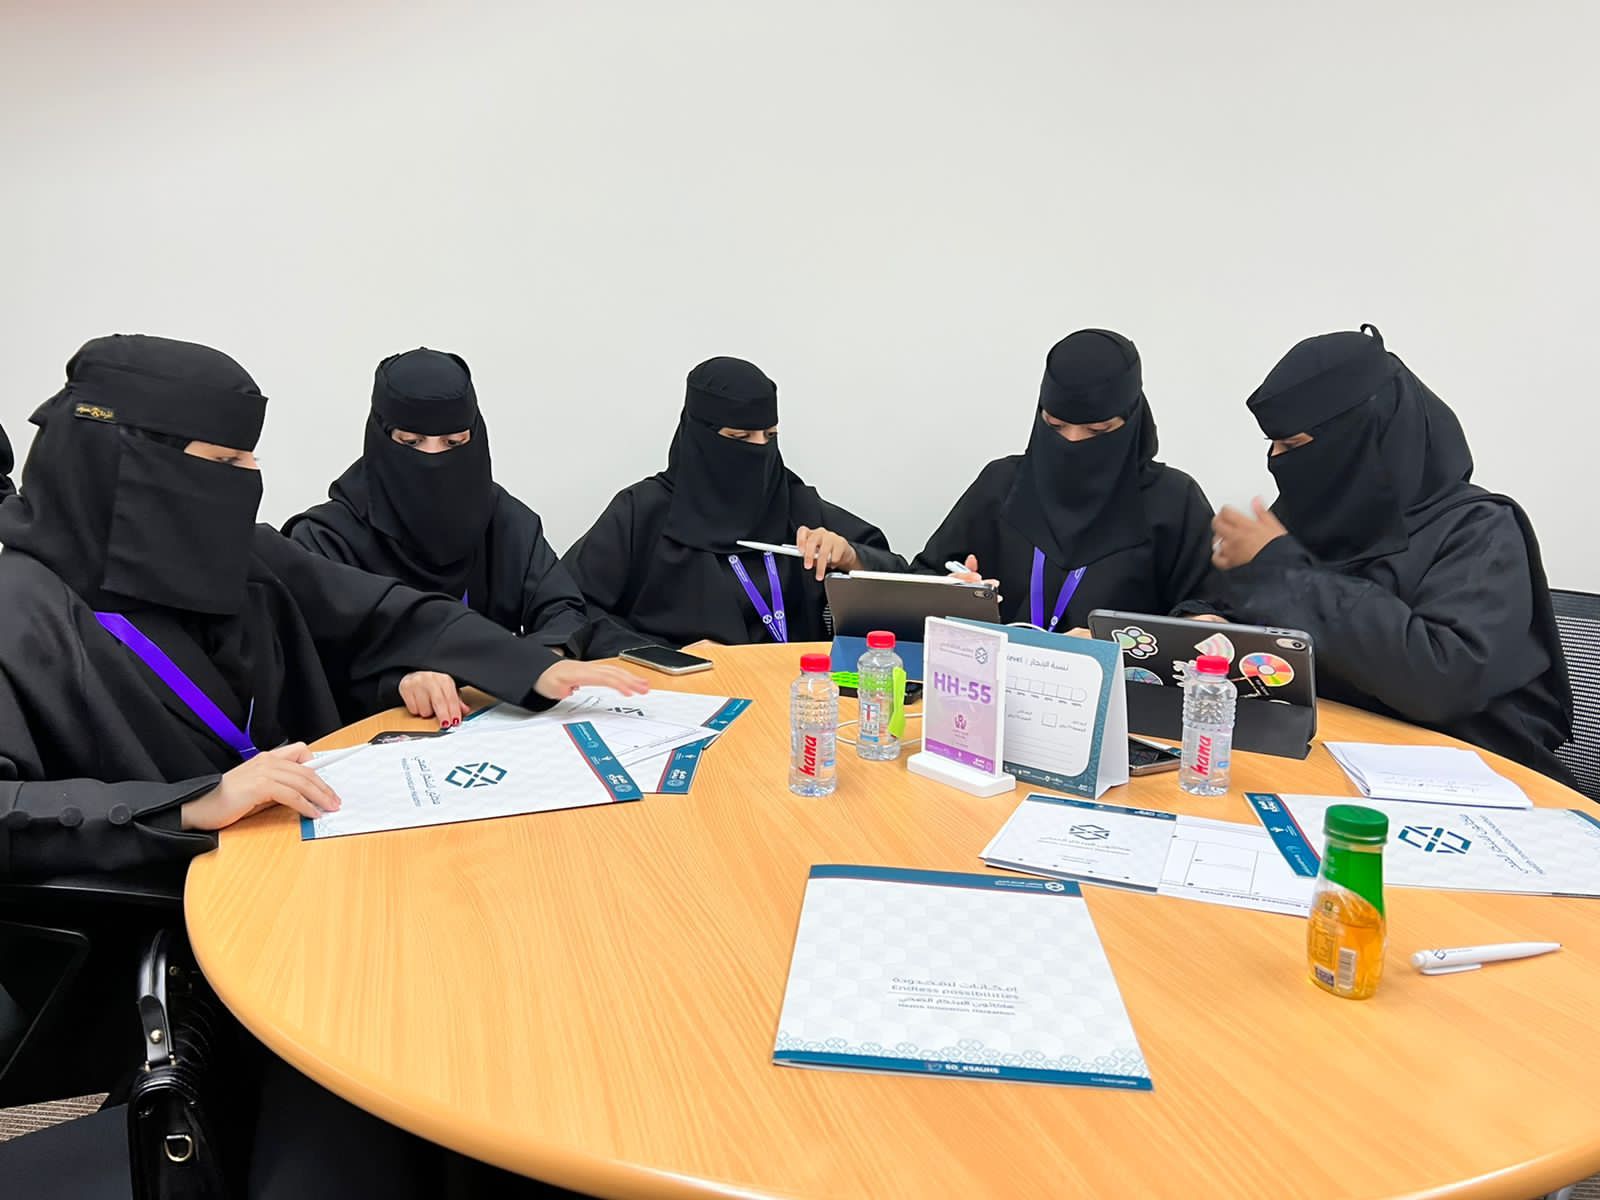 بعد منافسة مع 400 فريقٍ من 33 جامعةً سعوديةً وجهةً ابتكاريةً  تأهُل فريقين من طلاب جامعة بيشة للتصفيات النهائية في هاكاثون الابتكار الصحي 2023